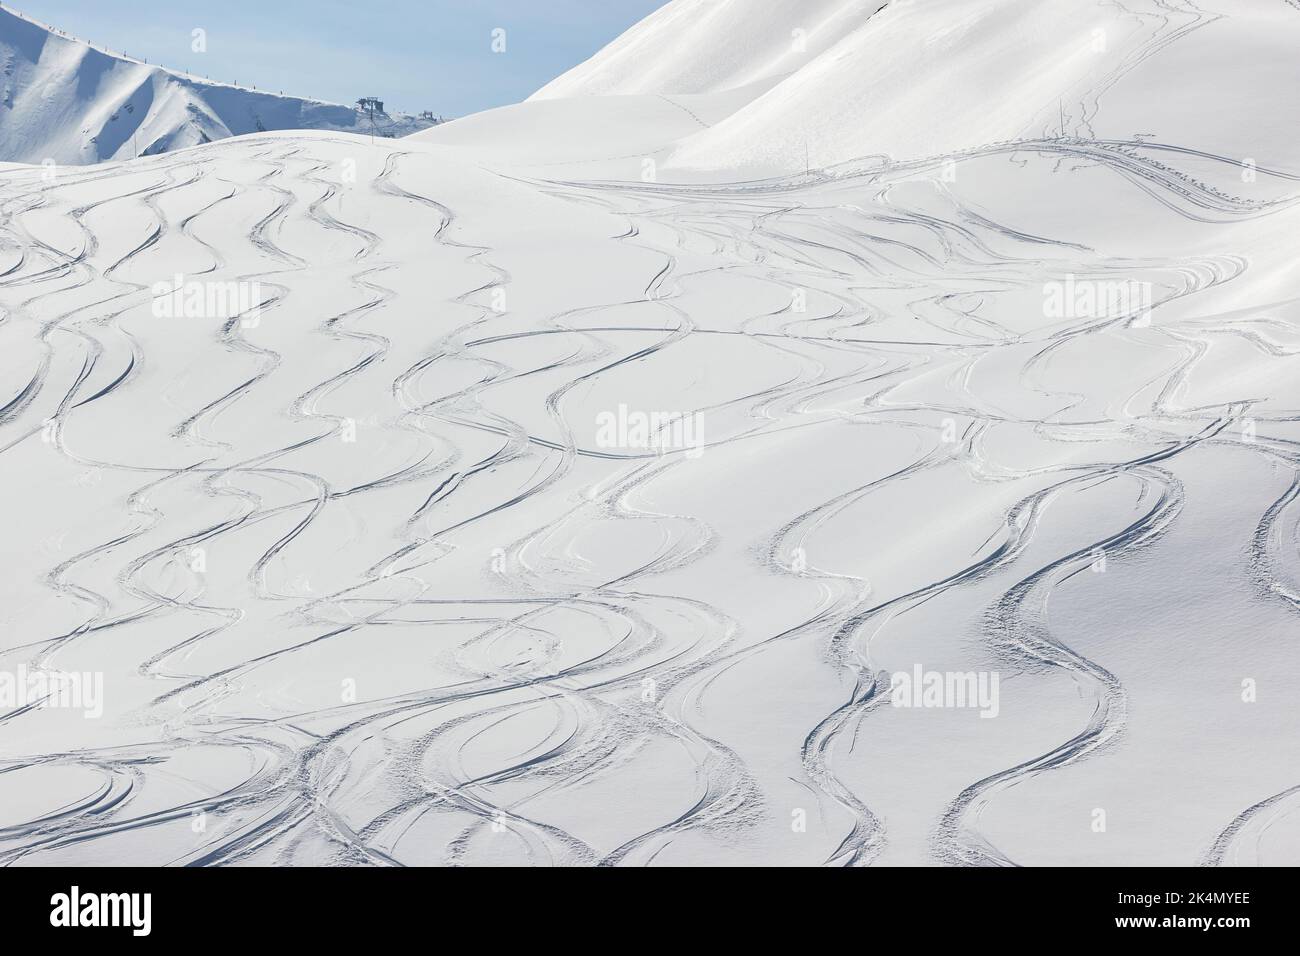 Ski Slope with Fresh Curves Stock Photo